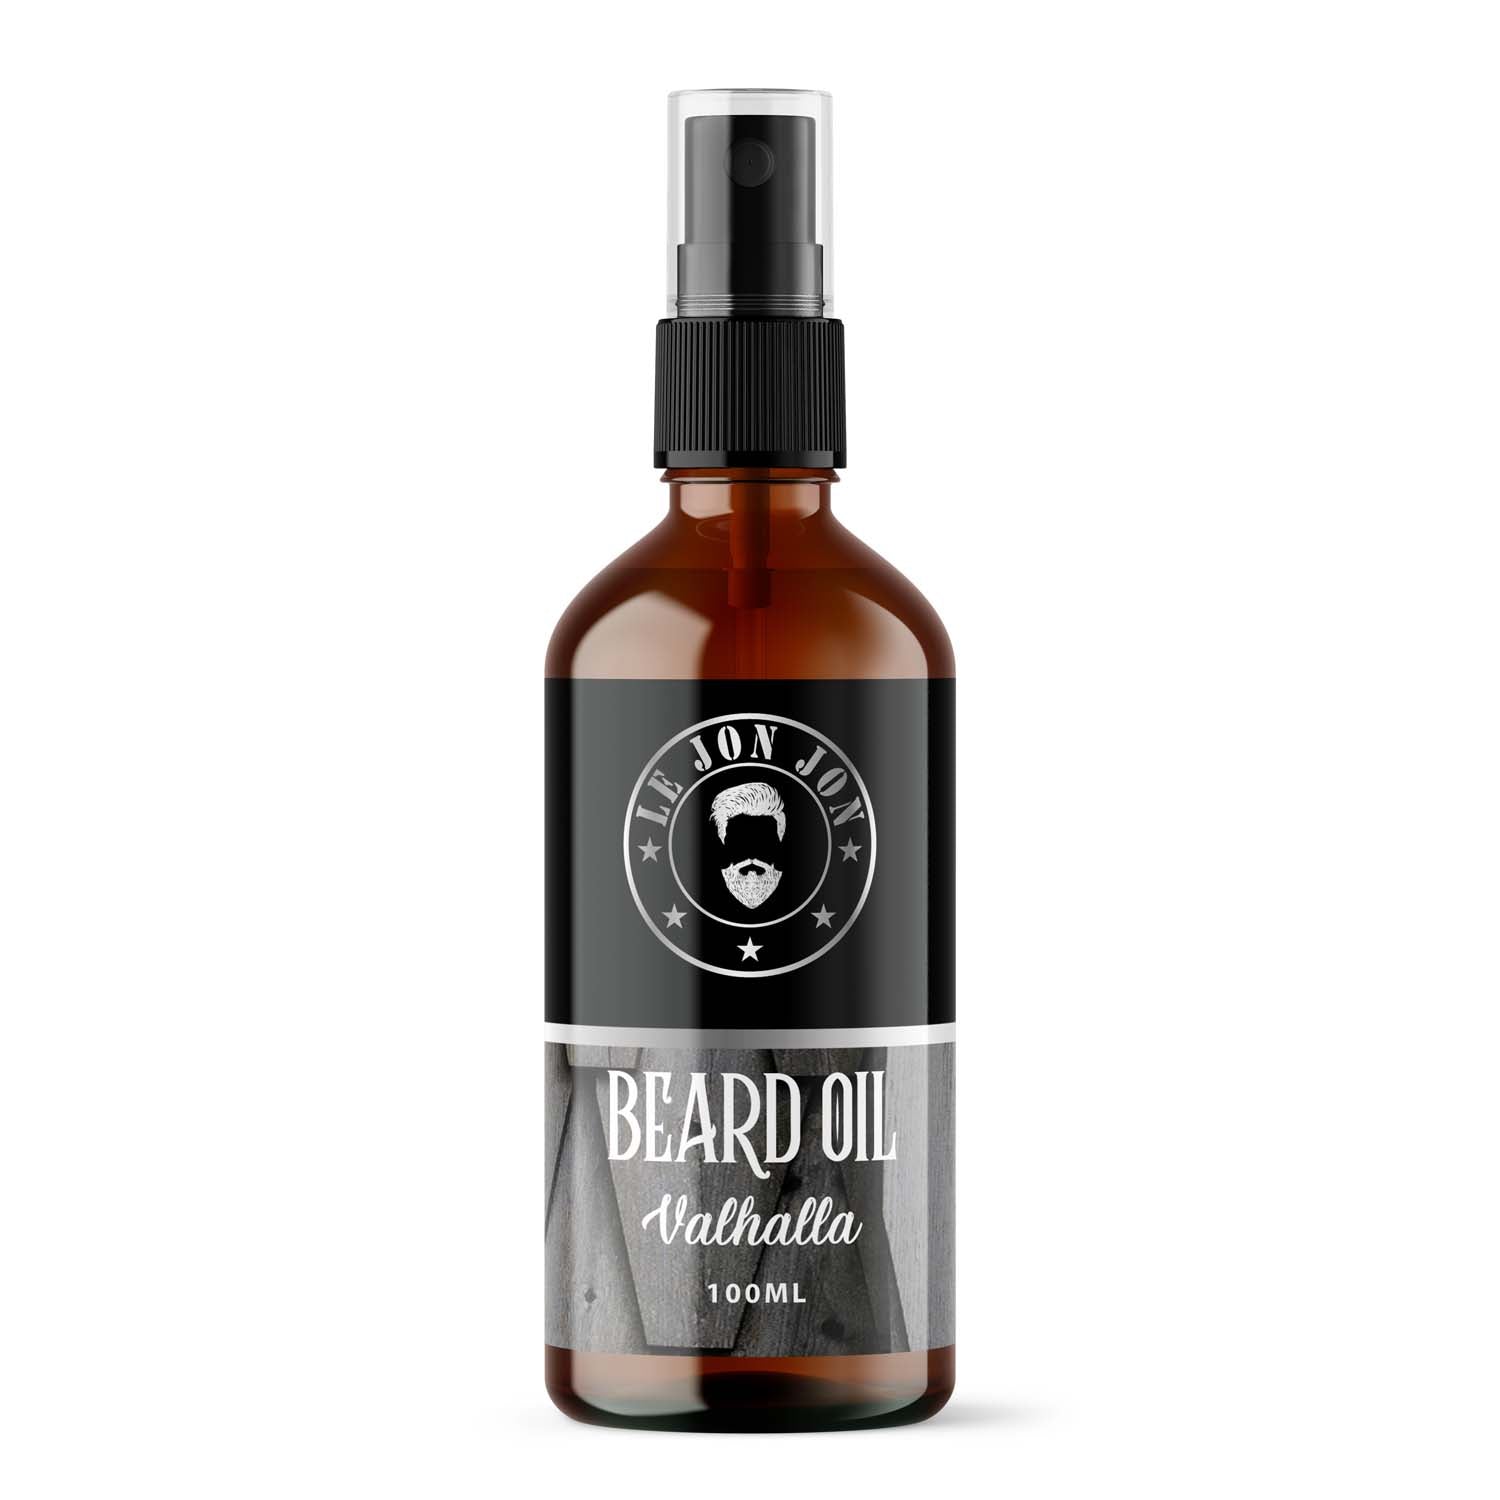 Valhalla 100ml bottle of beard oil